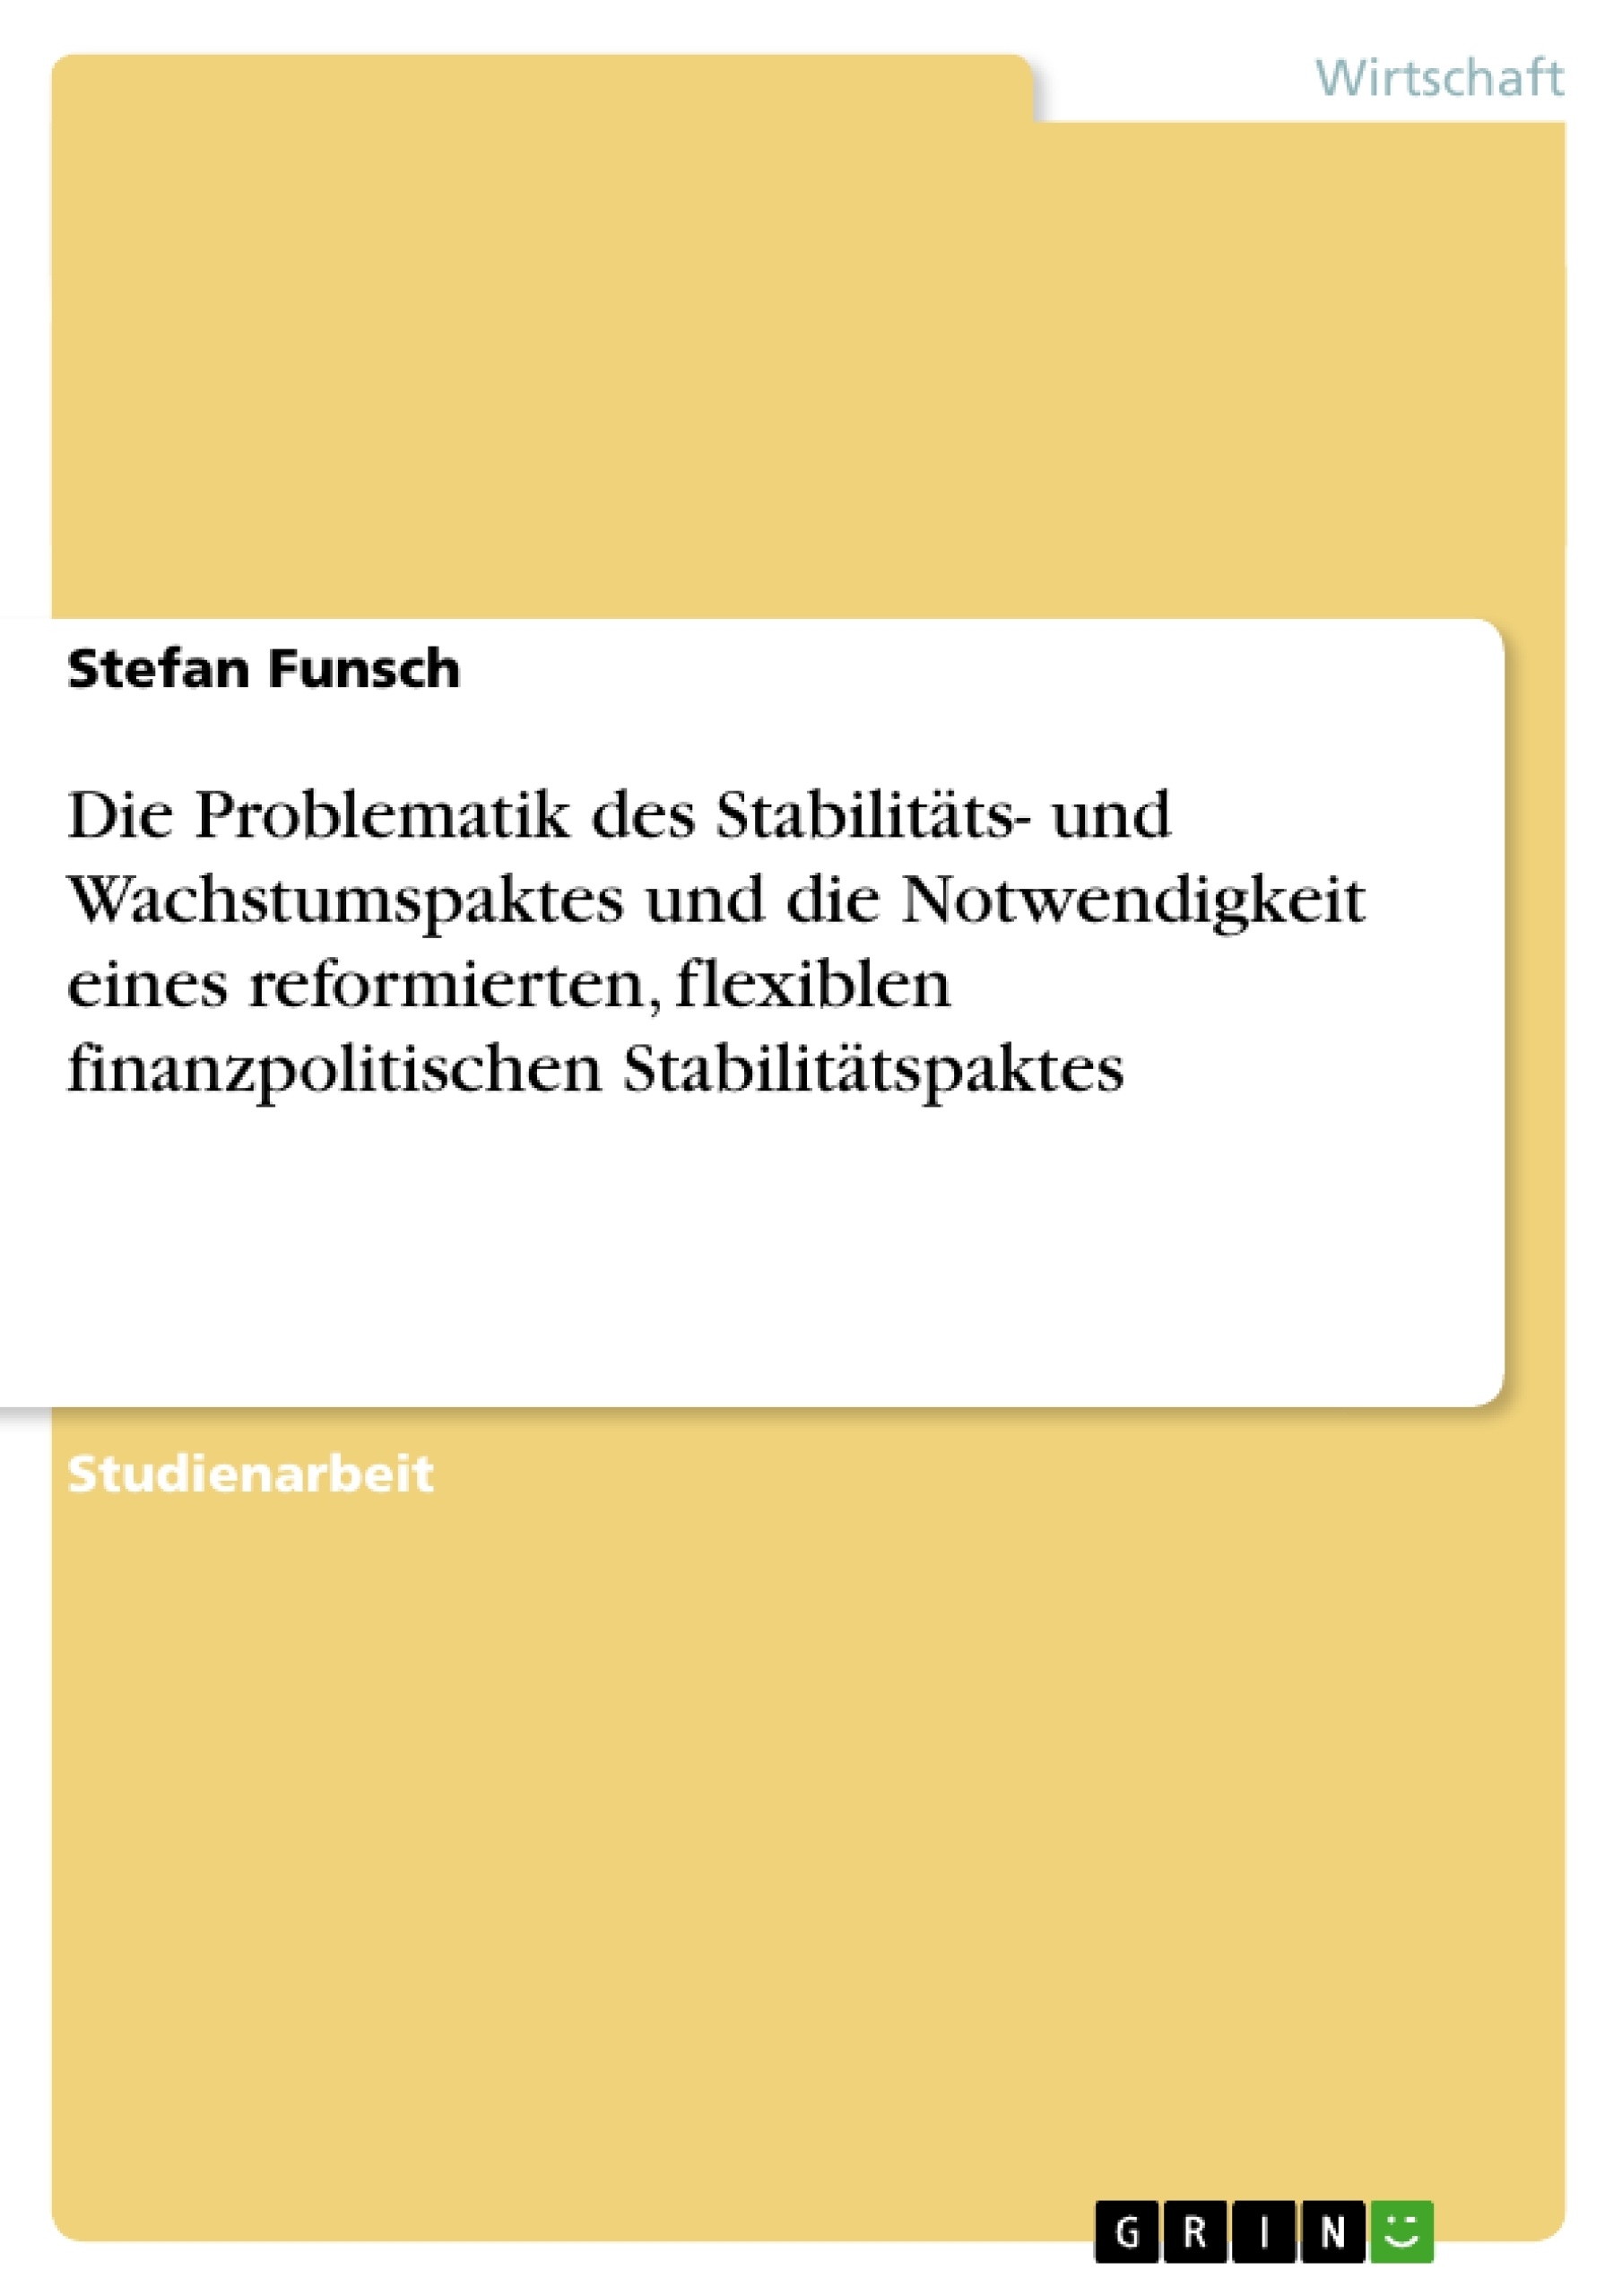 Titre: Die Problematik des Stabilitäts- und Wachstumspaktes und die Notwendigkeit eines reformierten, flexiblen finanzpolitischen Stabilitätspaktes